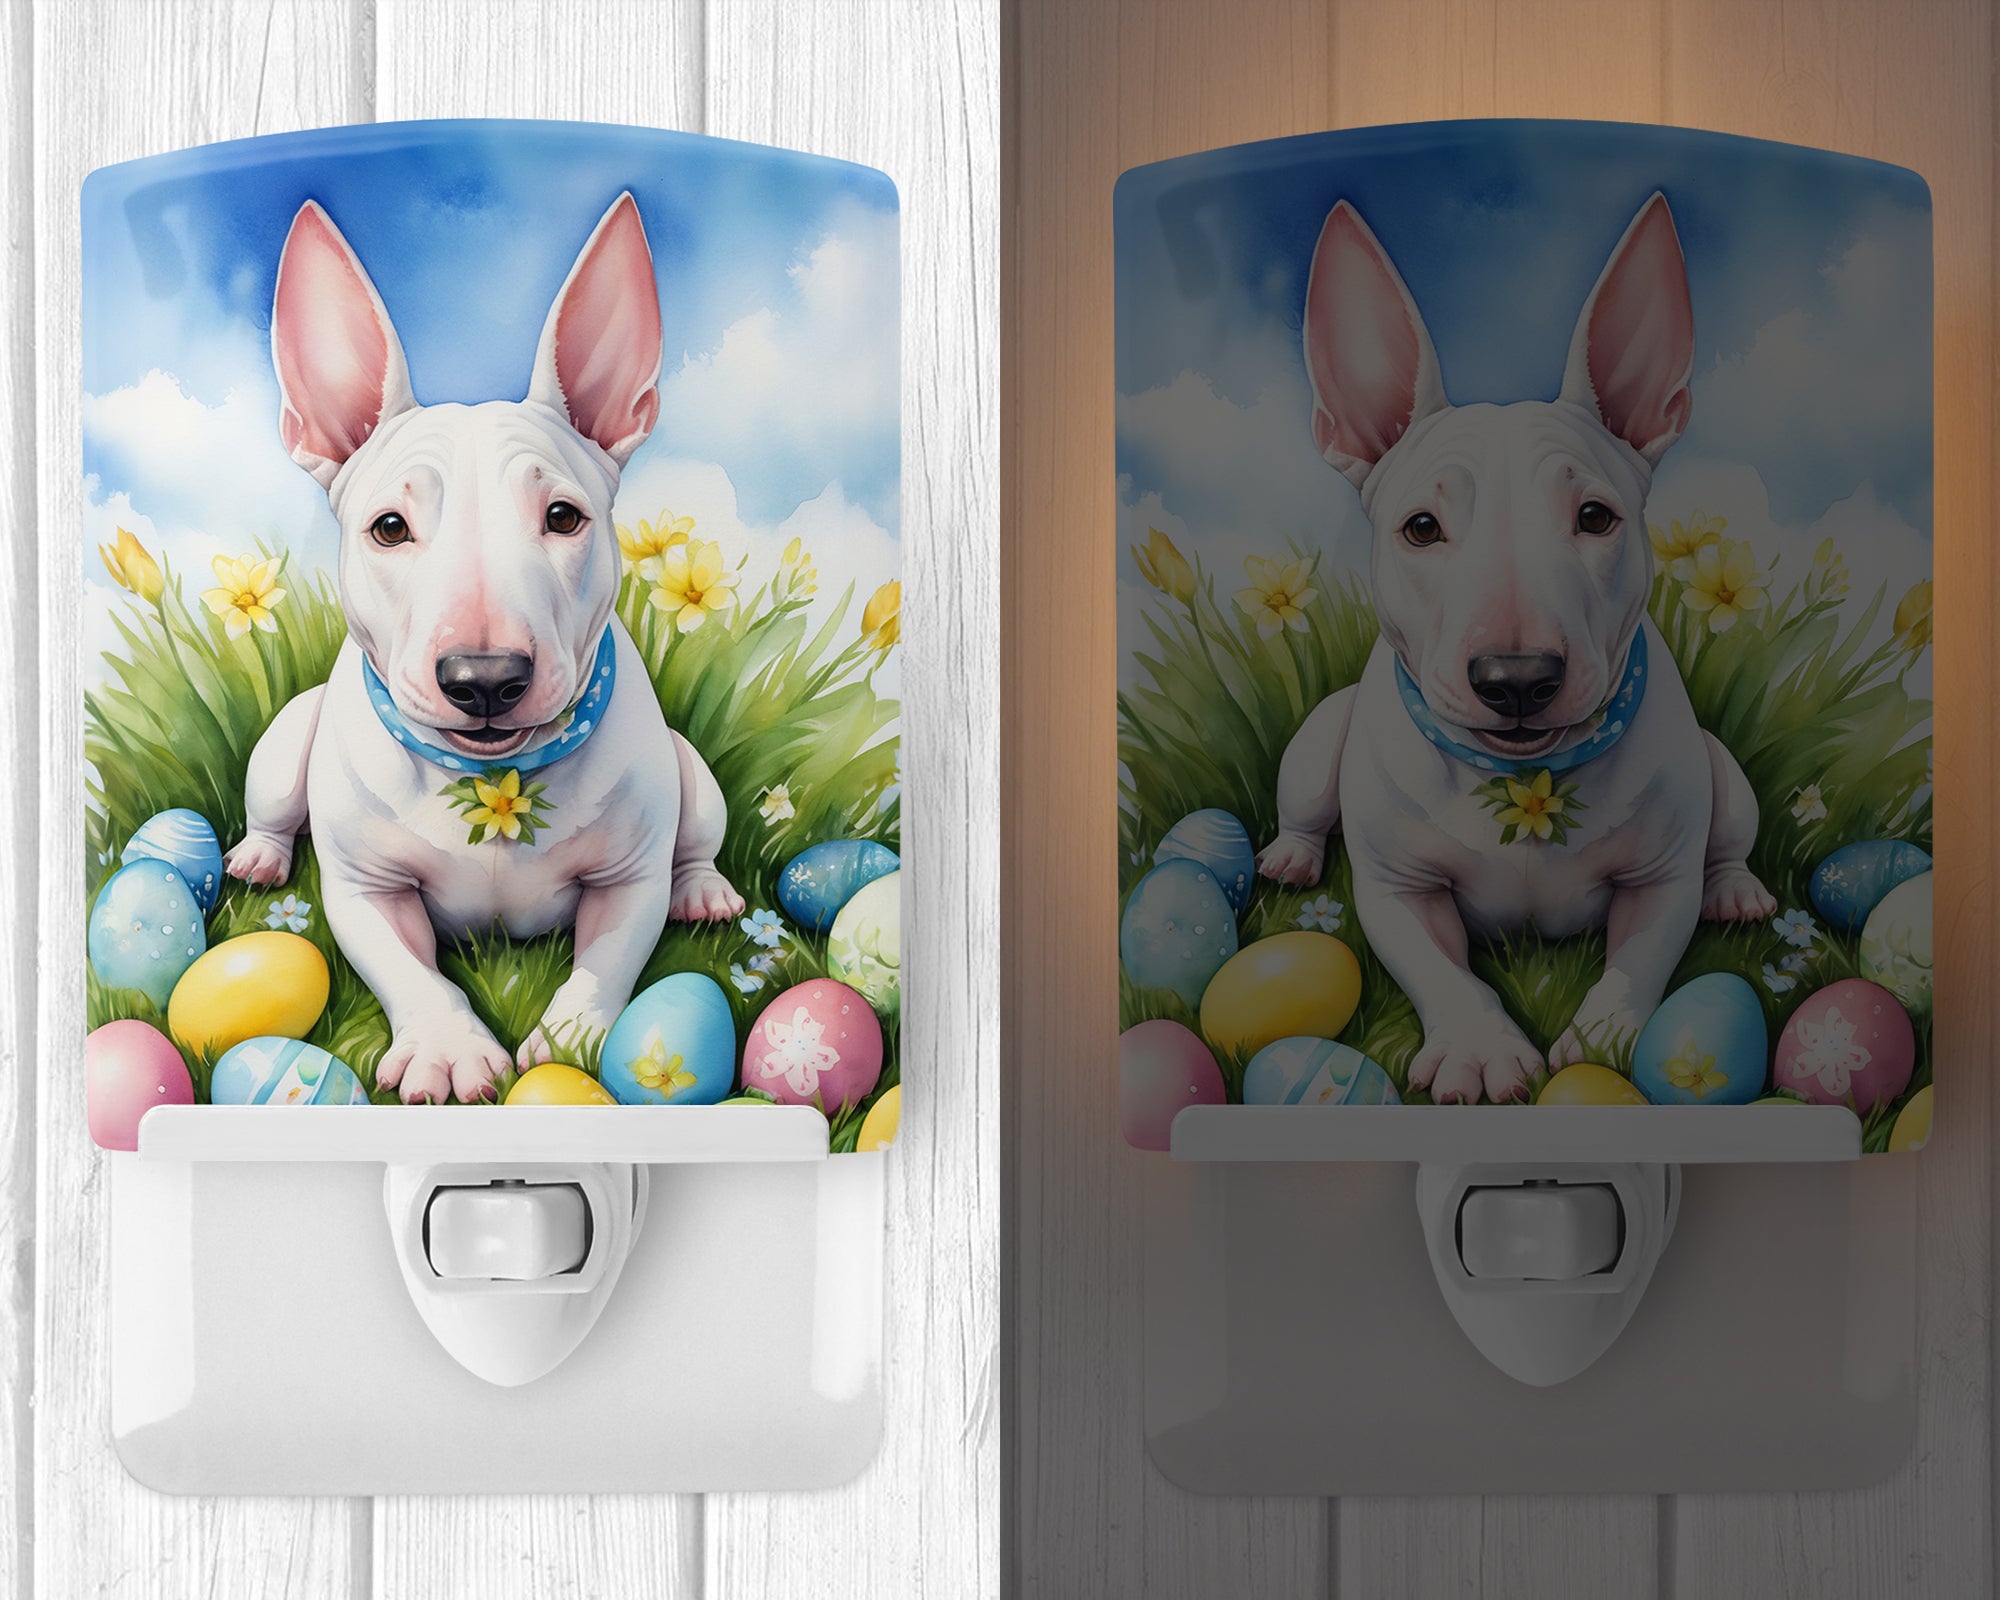 English Bull Terrier Easter Egg Hunt Ceramic Night Light